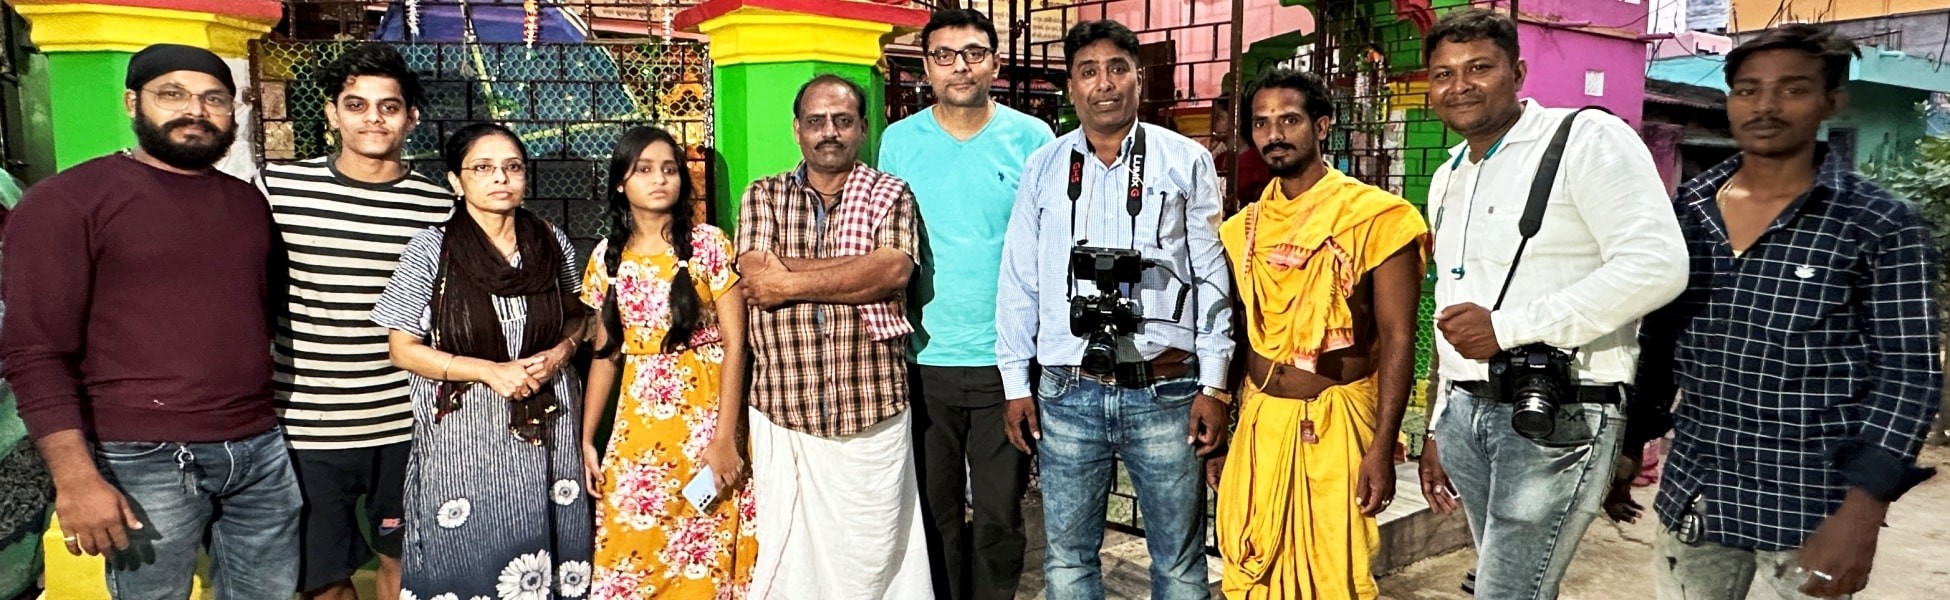 film shooting locations in Prayagraj, video shooting locations in Prayagraj, tv shooting locations in Prayagraj, shooting locations in Prayagraj